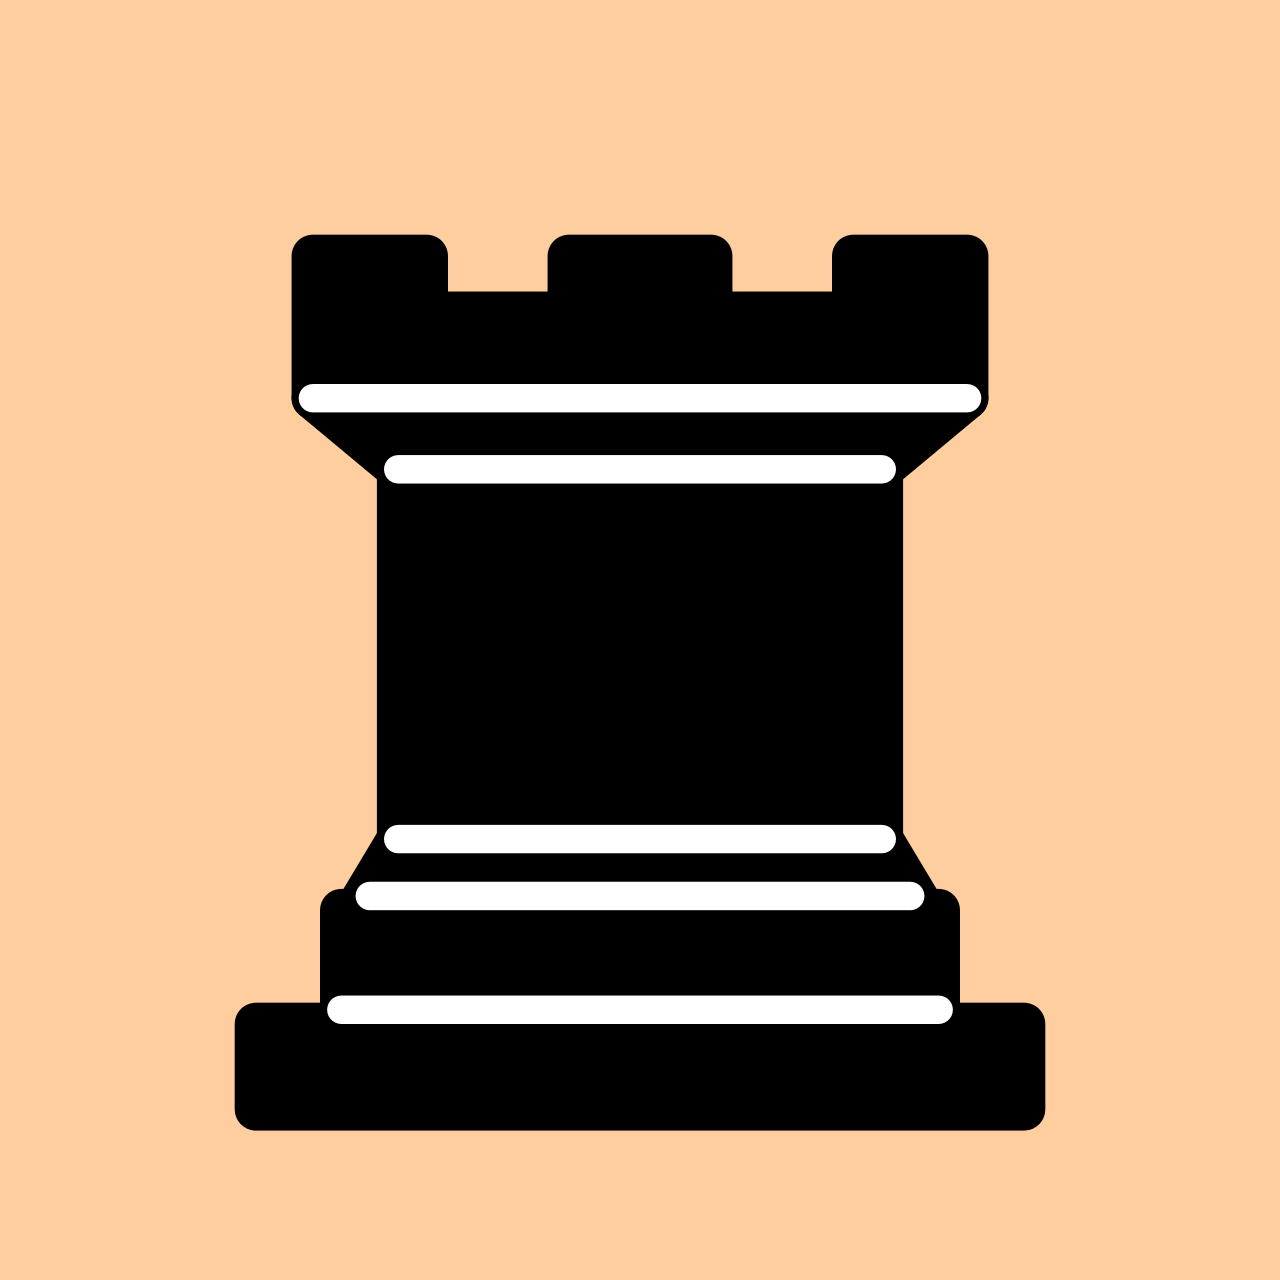 Chess piece.